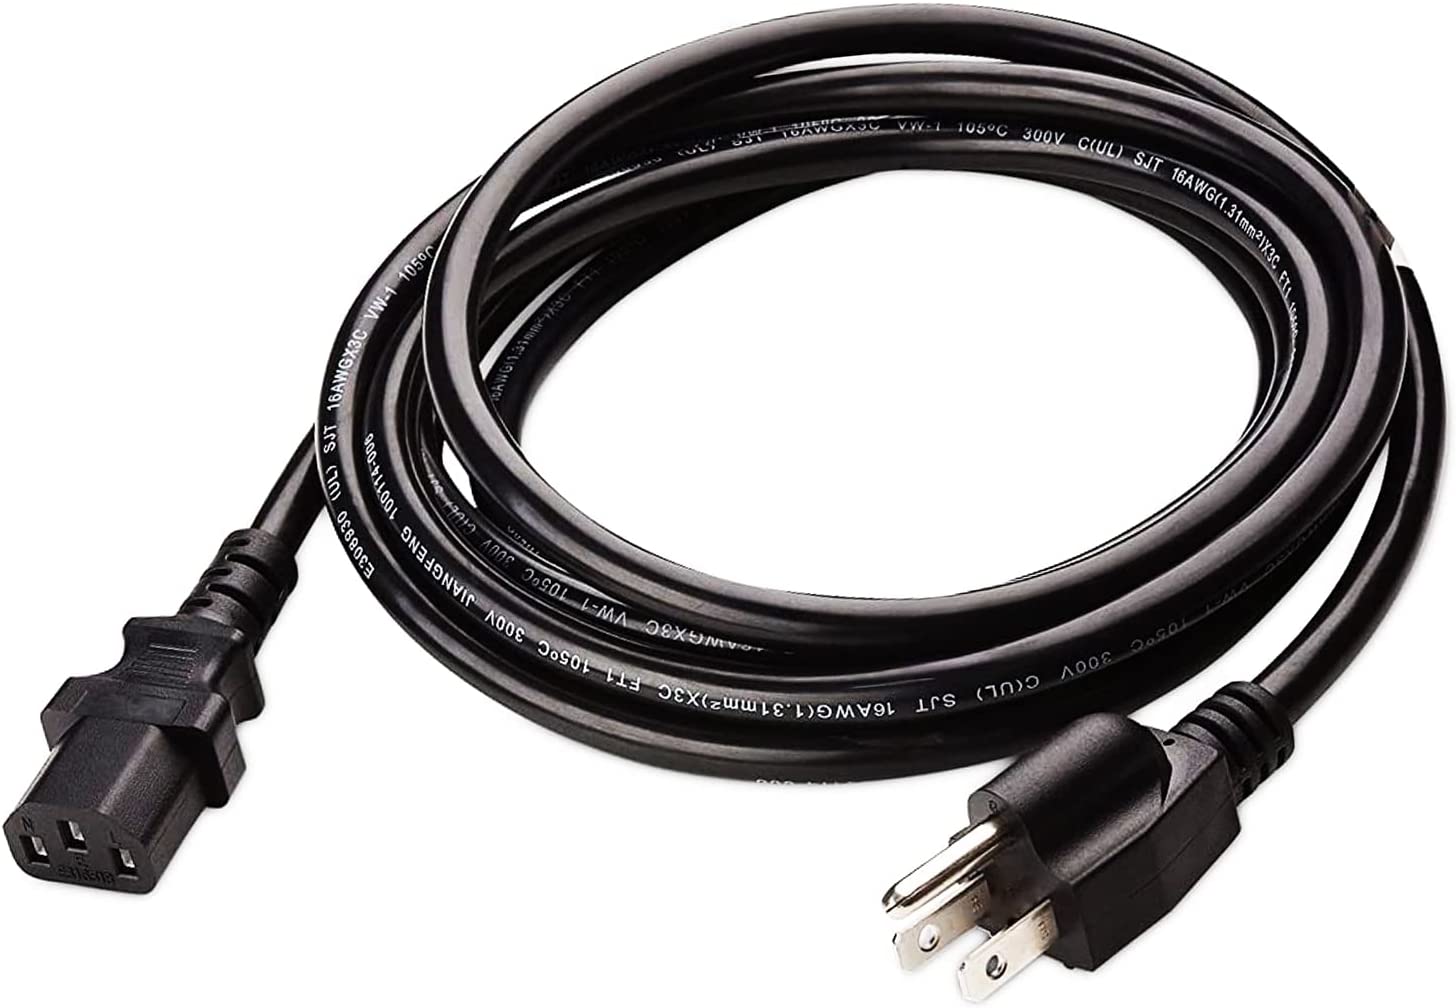 Cable de alimentación para monitor para DELL/HP/ION Block Rocker, cable de  alimentación de CA de 3 clavijas de repuesto